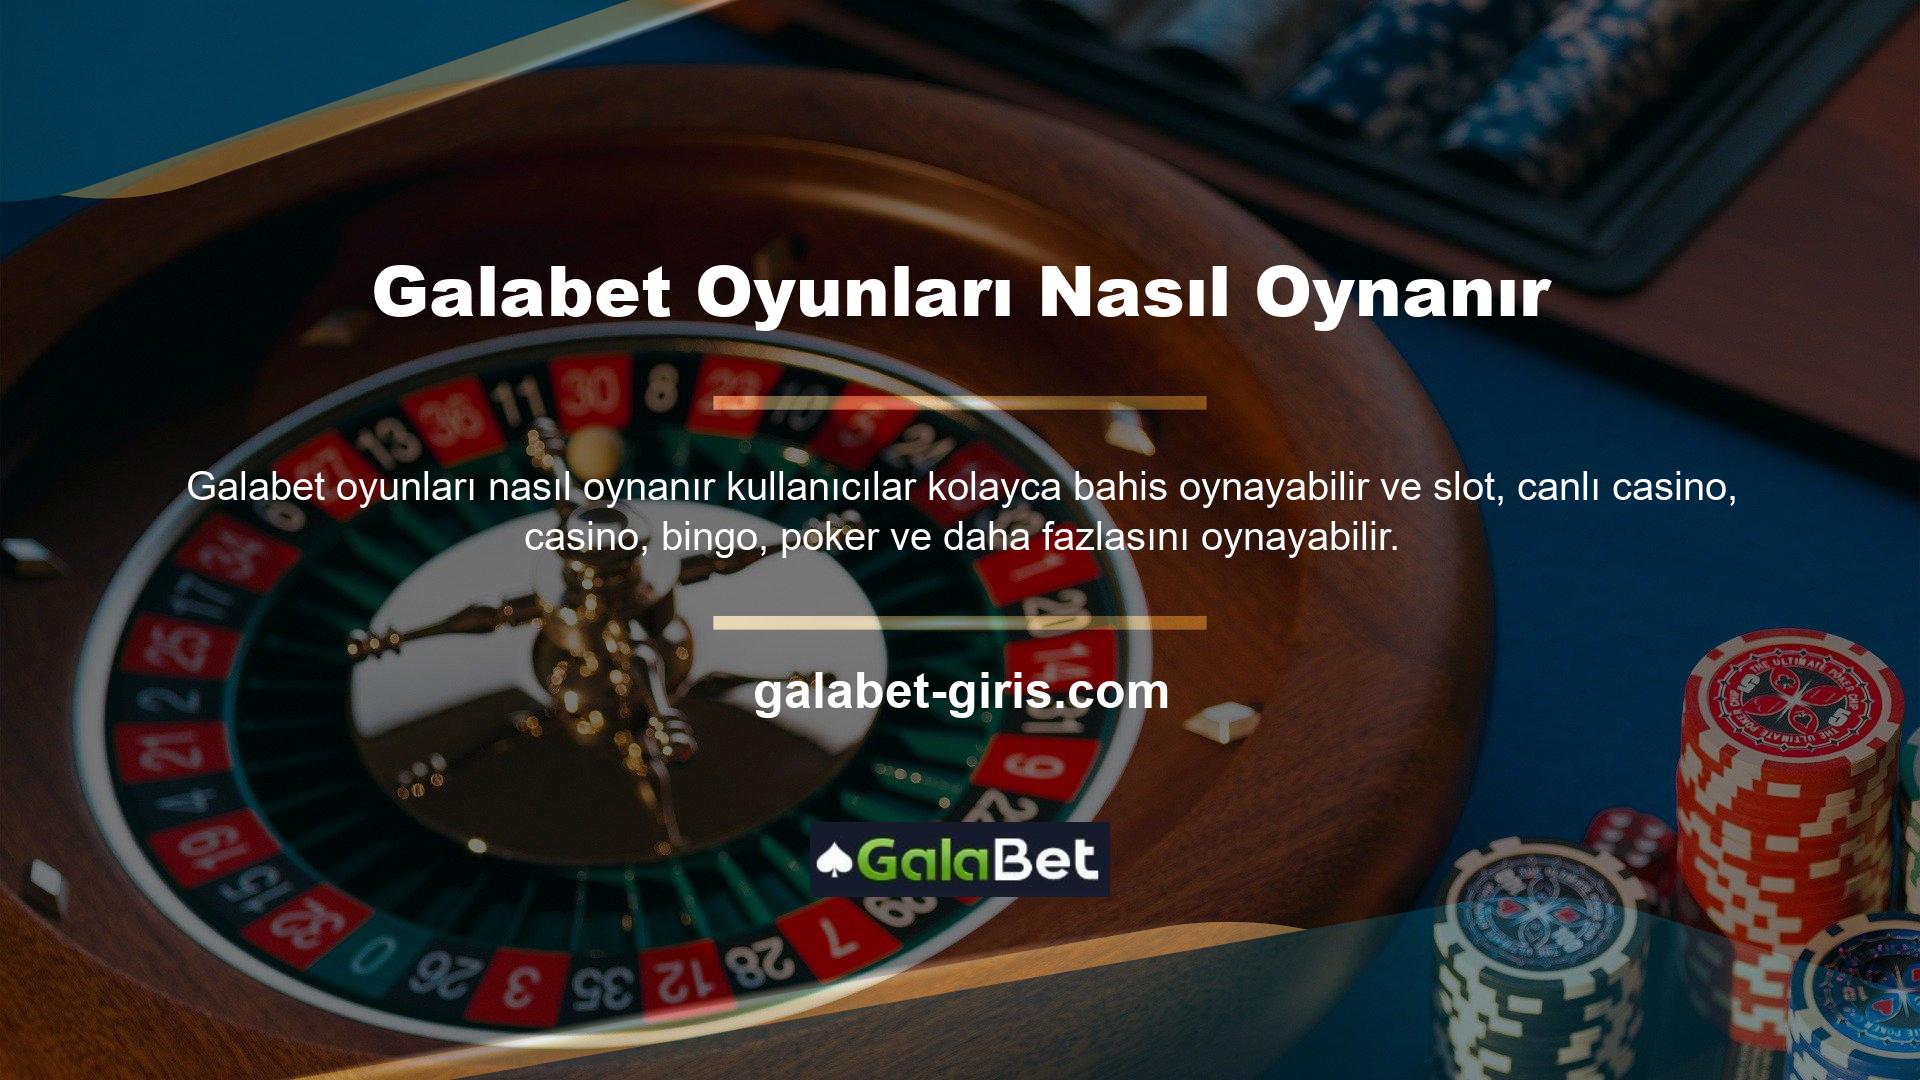 Galabet Casino Oyunlarında canlı bahis oynayarak bakiyenizi artırabilirsiniz